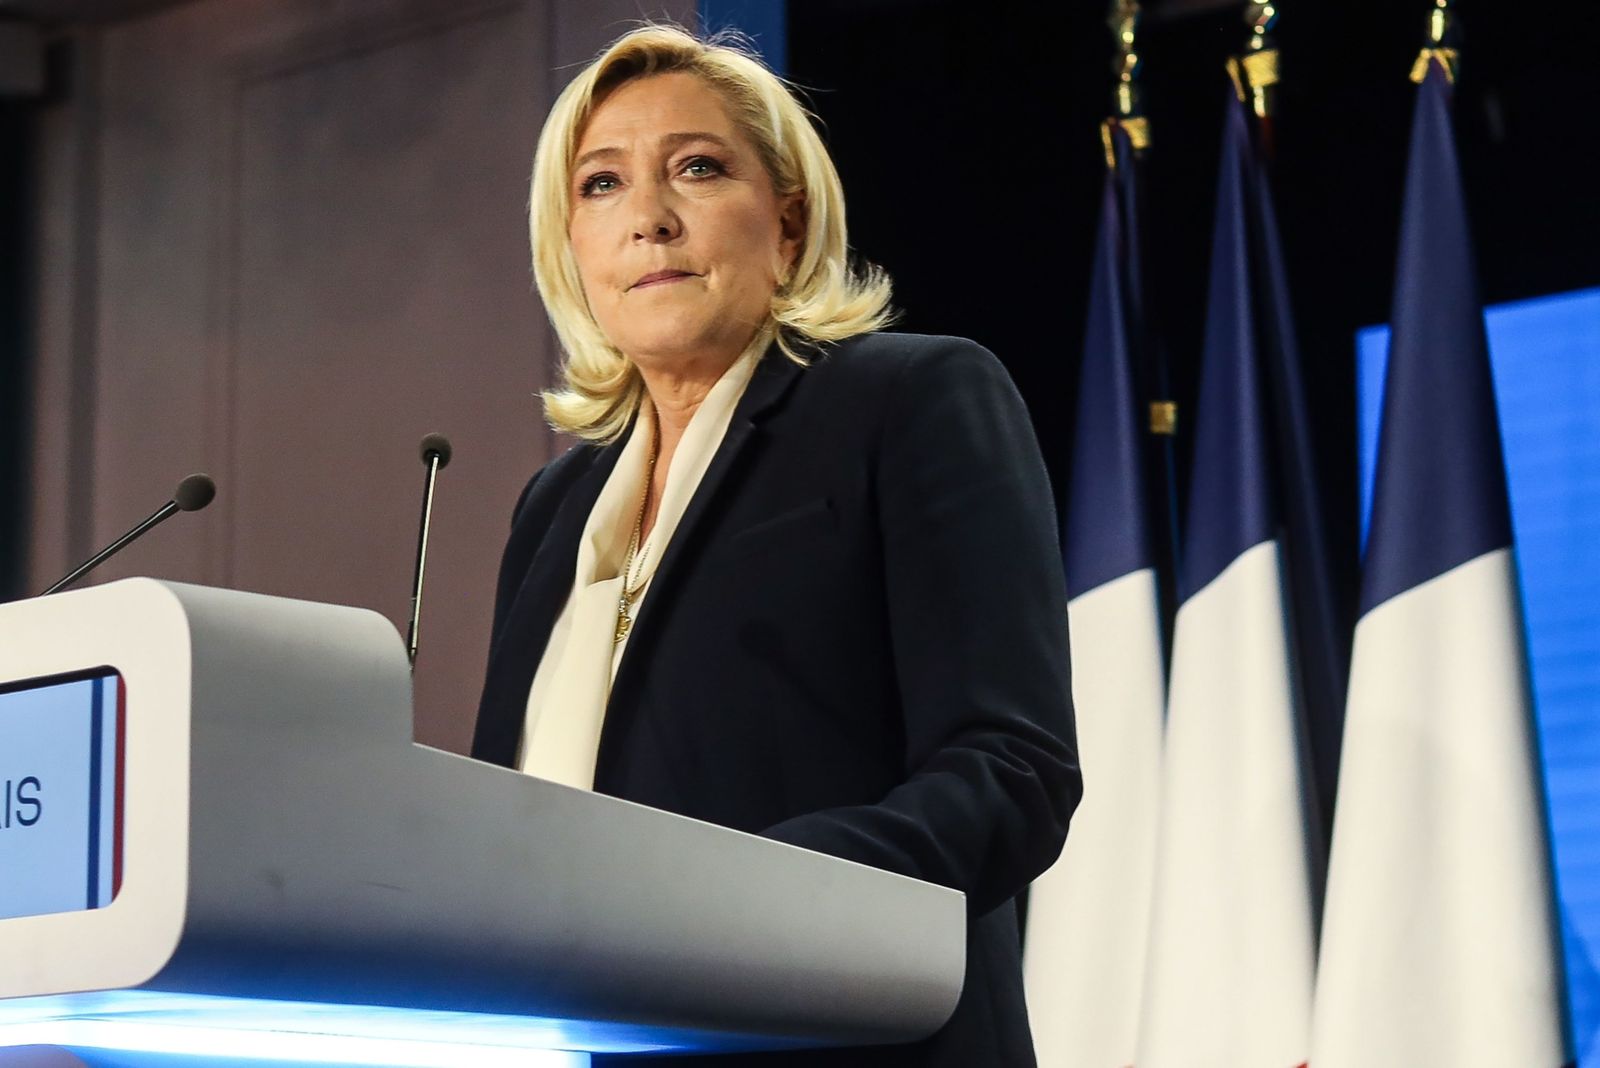 مرشحة اليمين المتطرف للرئاسة الفرنسية مارين لوبان تتحدث في باريس بعد إعلان نتائج الدورة الثانية من الانتخابات - 24 أبريل 2022 - Bloomberg